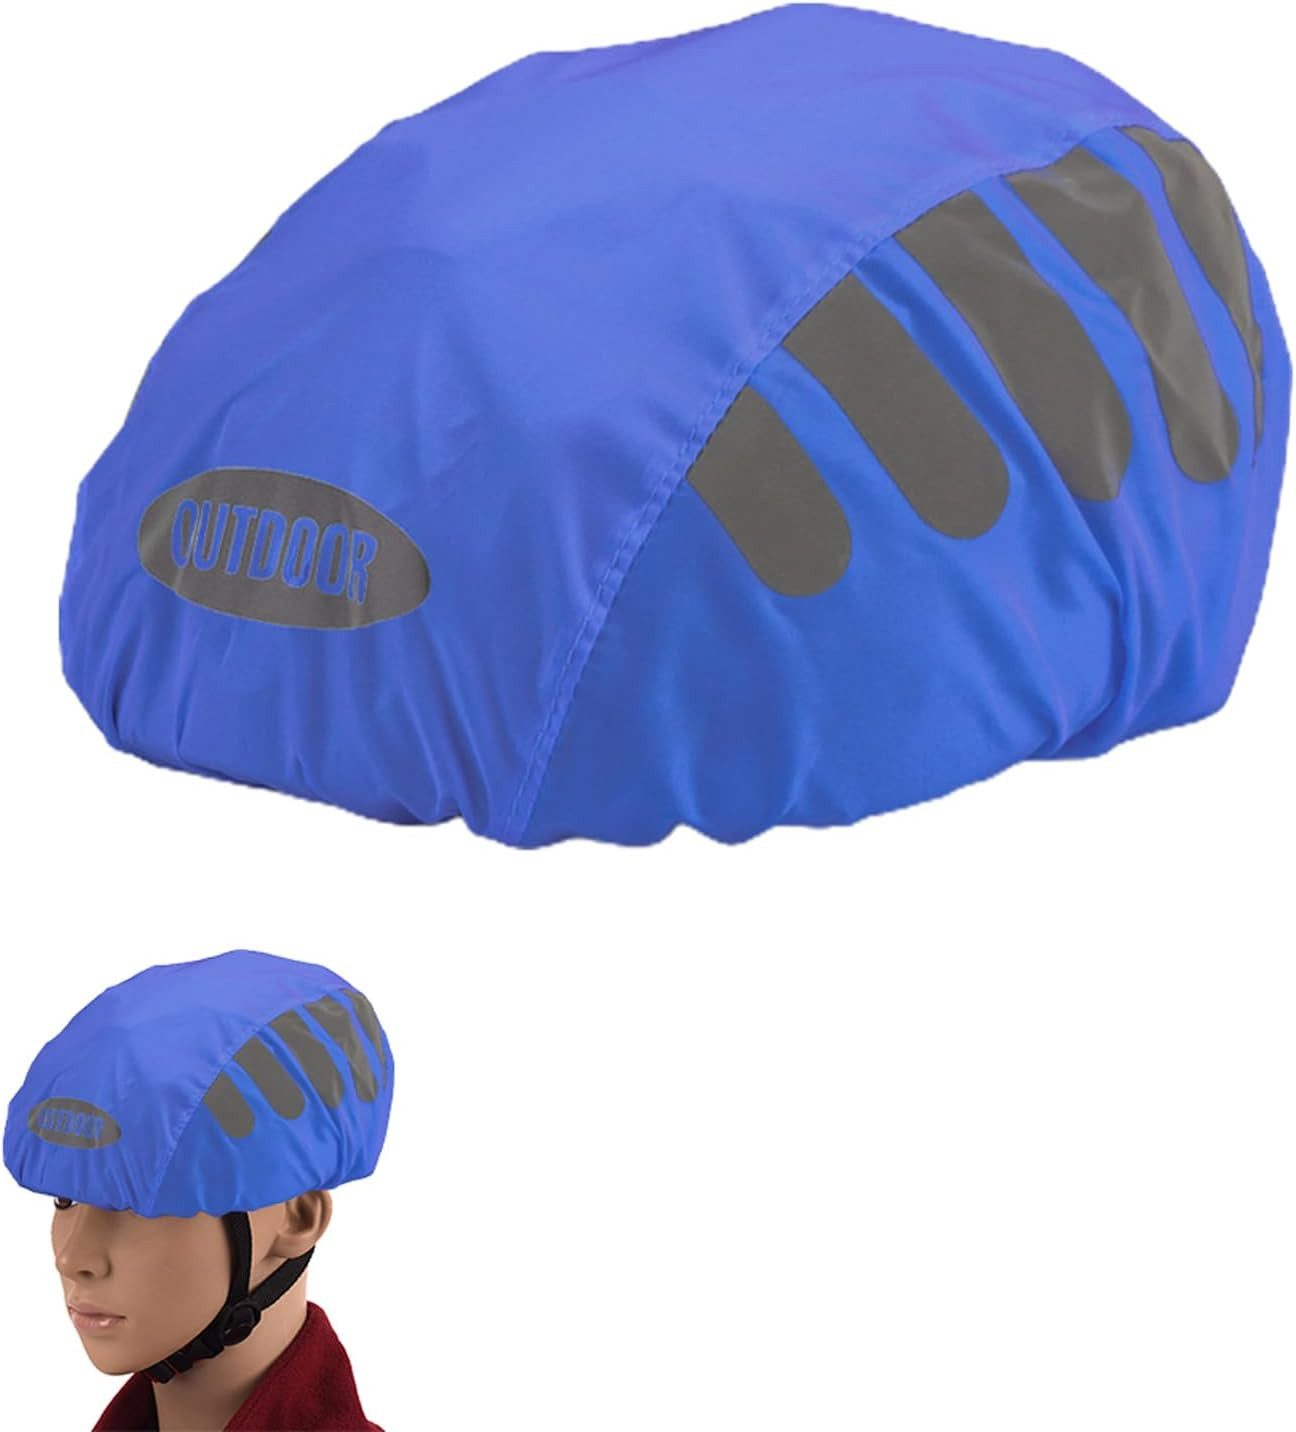 Coonoor Fahrradhelmüberzug Reflektierende Fahrrad Regenhaube, Fahrradhelm Regenschutz, Wind- und Wasserdichter für alle Helme